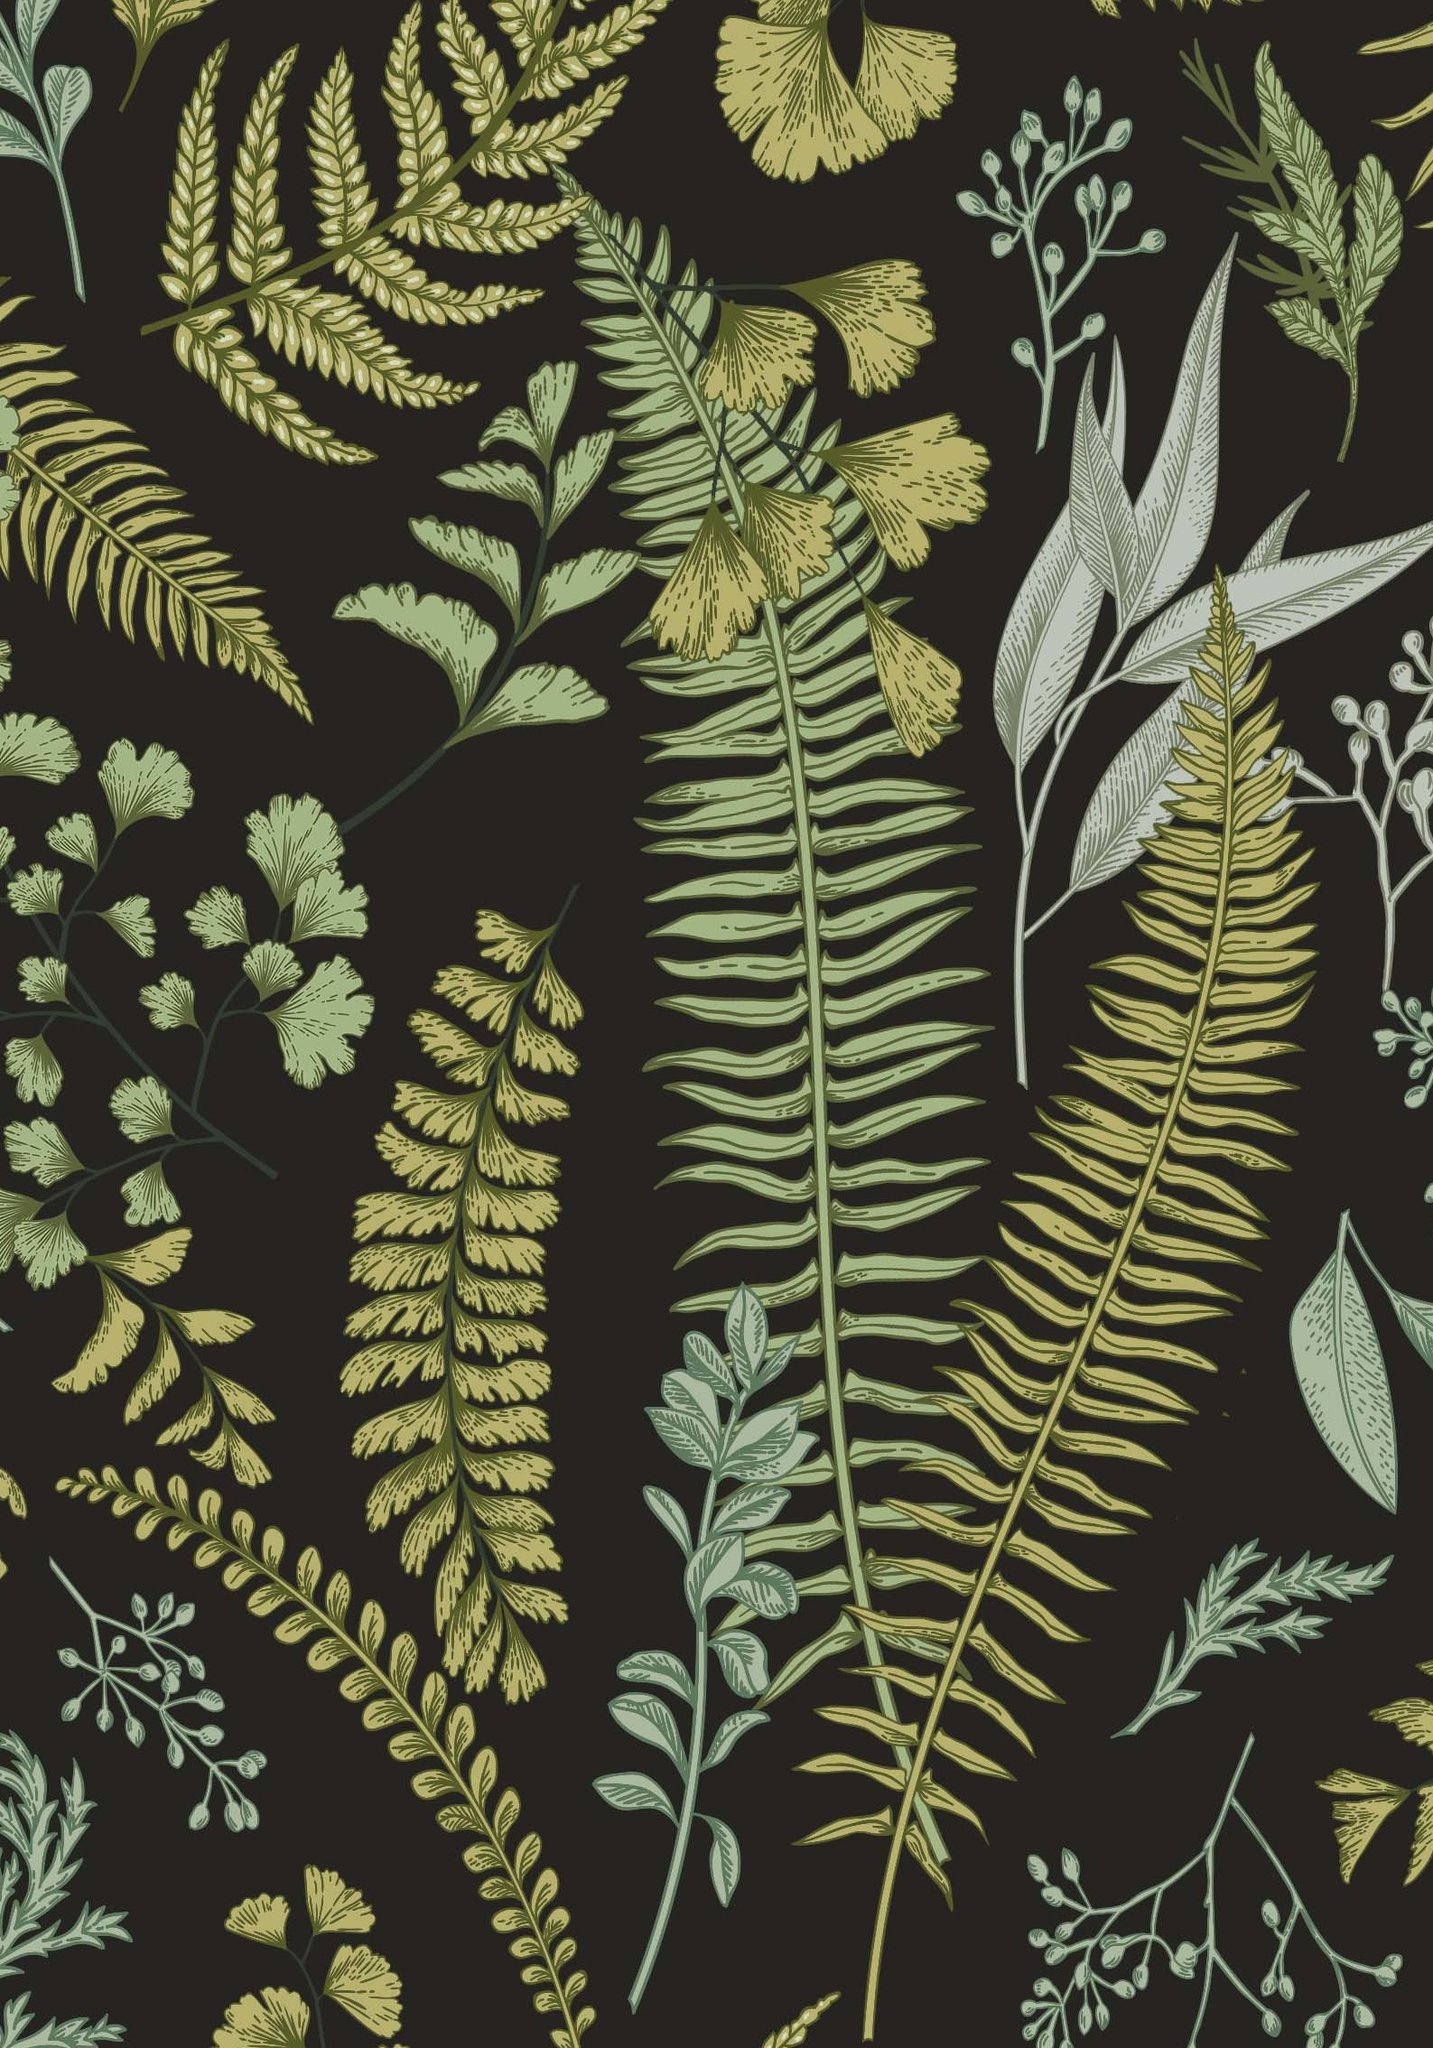 Dark Botanical , HD Wallpaper & Backgrounds